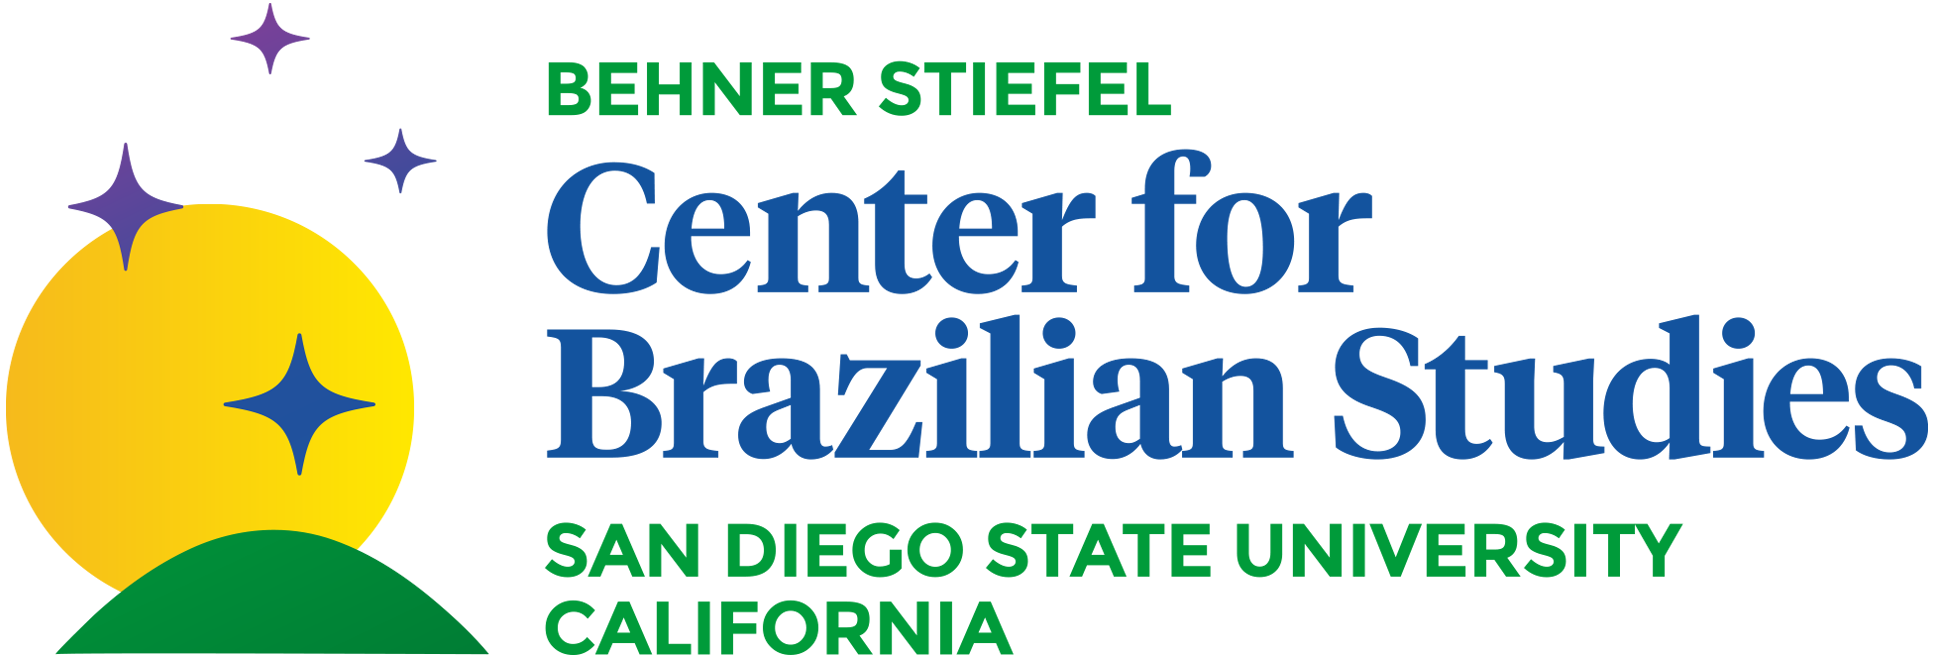 Centro Behner Stiefel de Estudos Brasileiros